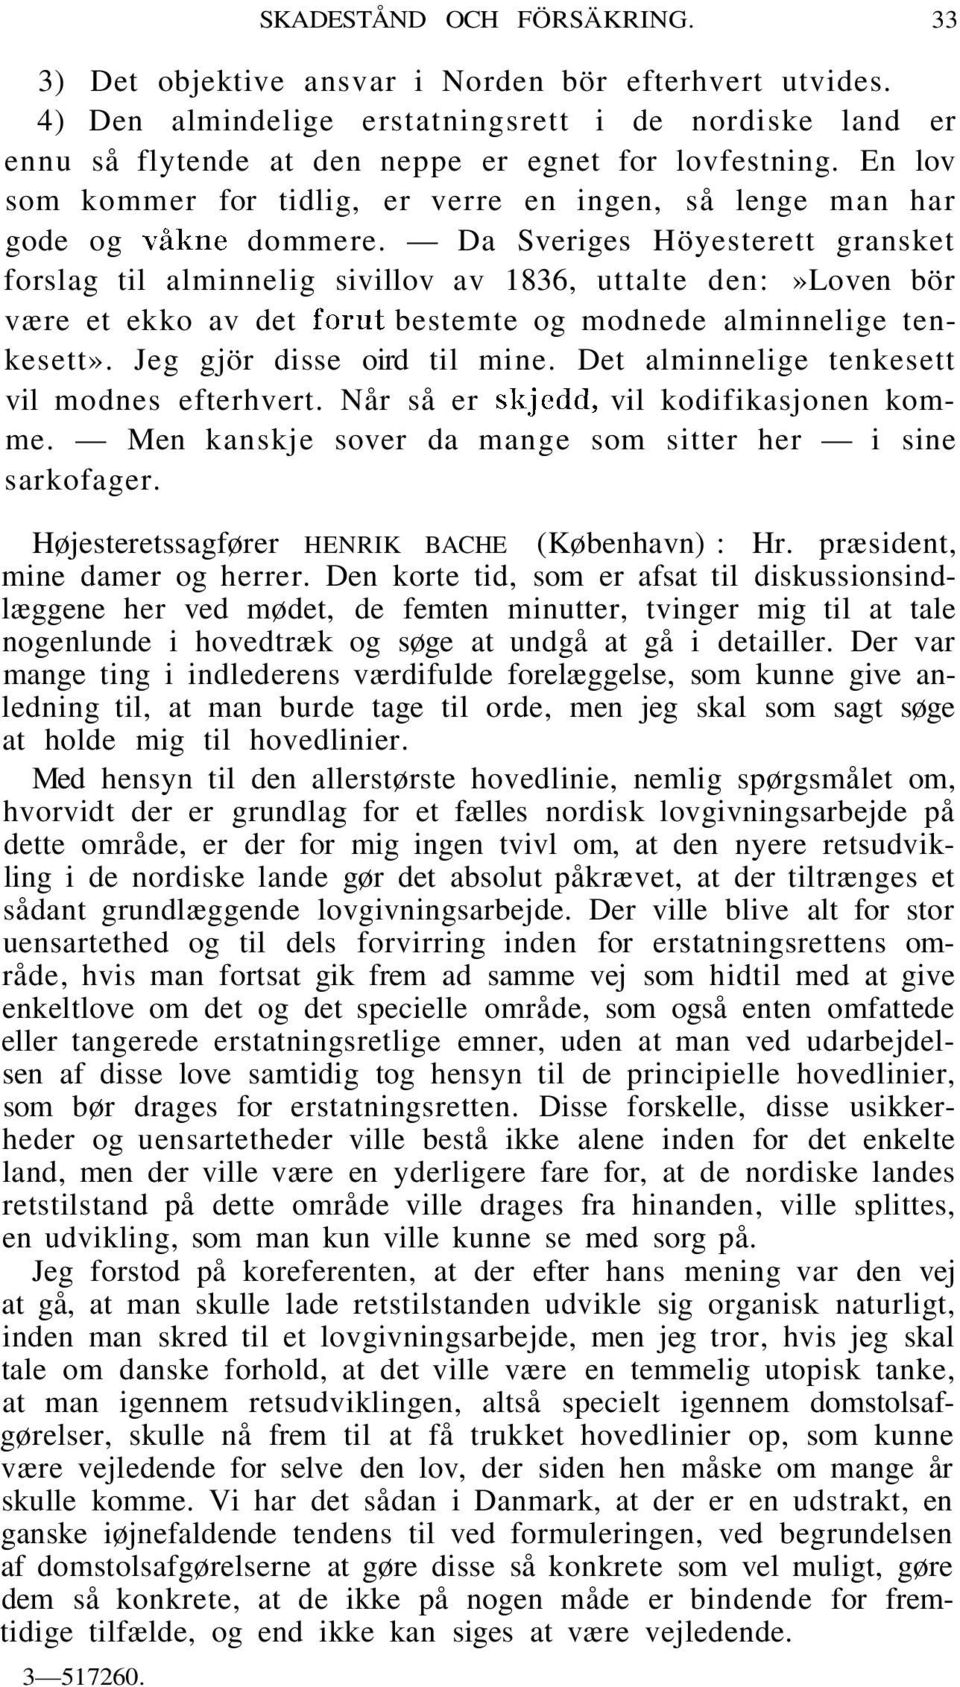 Da Sveriges Höyesterett gransket forslag til alminnelig sivillov av 1836, uttalte den:»loven bör være et ekko av det förut bestemte og modnede alminnelige tenkesett». Jeg gjör disse oird til mine.